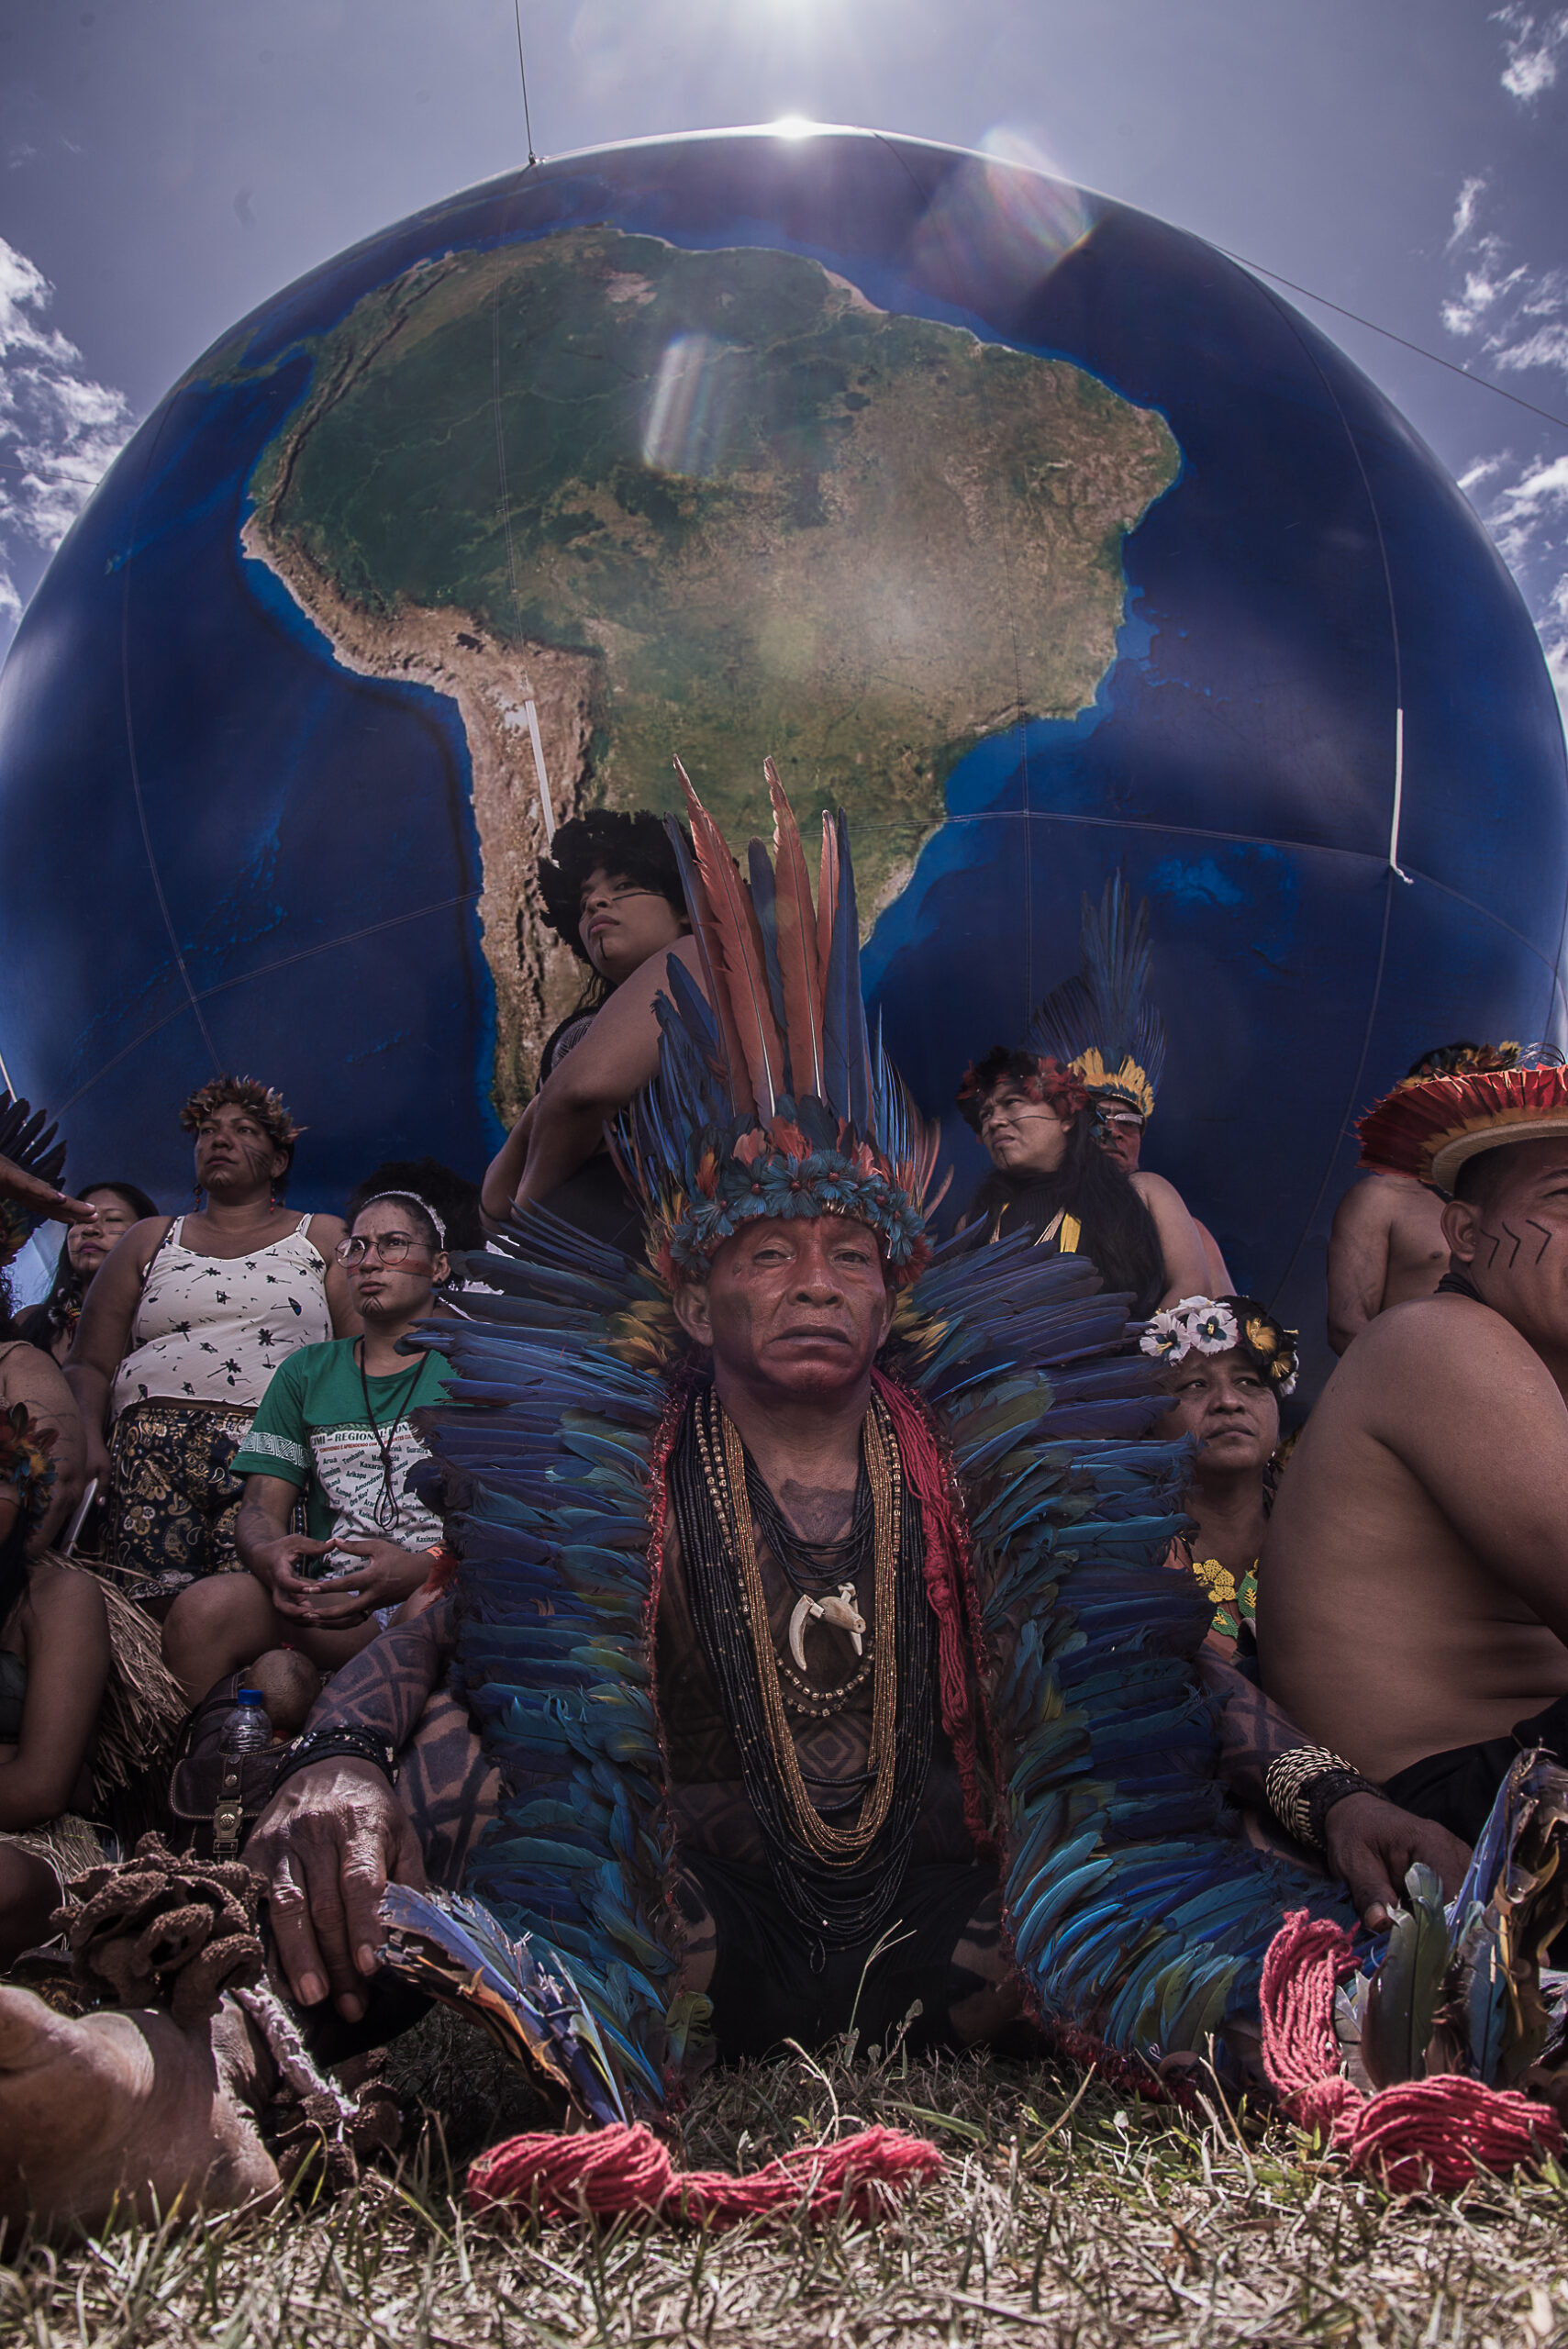 Grupo de manifestantes indígenas do Acampamento Terra Livre em volta de um globo terrestre inflável grande. No centro, um homem mais velho usando um cocar azul até os pés olha para a câmera com distinção. Homens, mulheres e crianças se aglutinam ao seu redor.